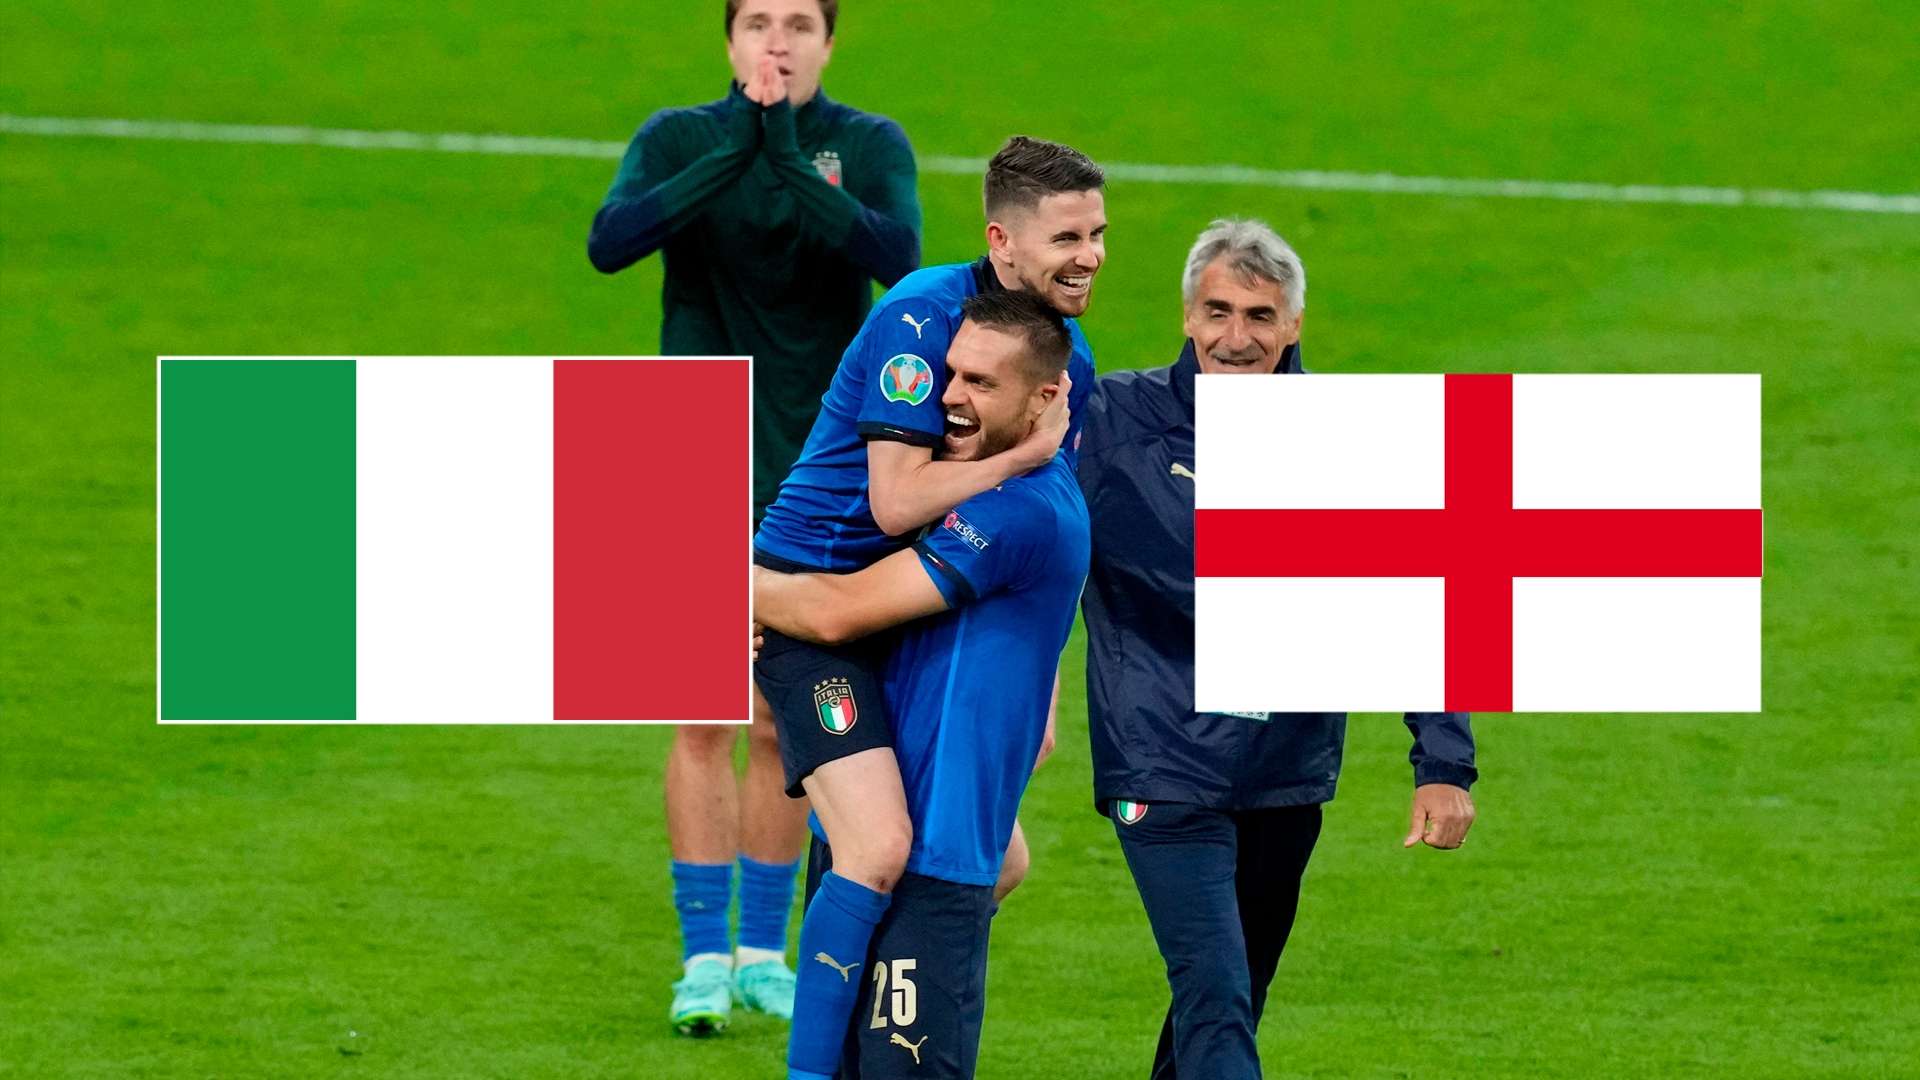 Italien England Fußball-em 2021 finale tv live-stream heute Live gfx